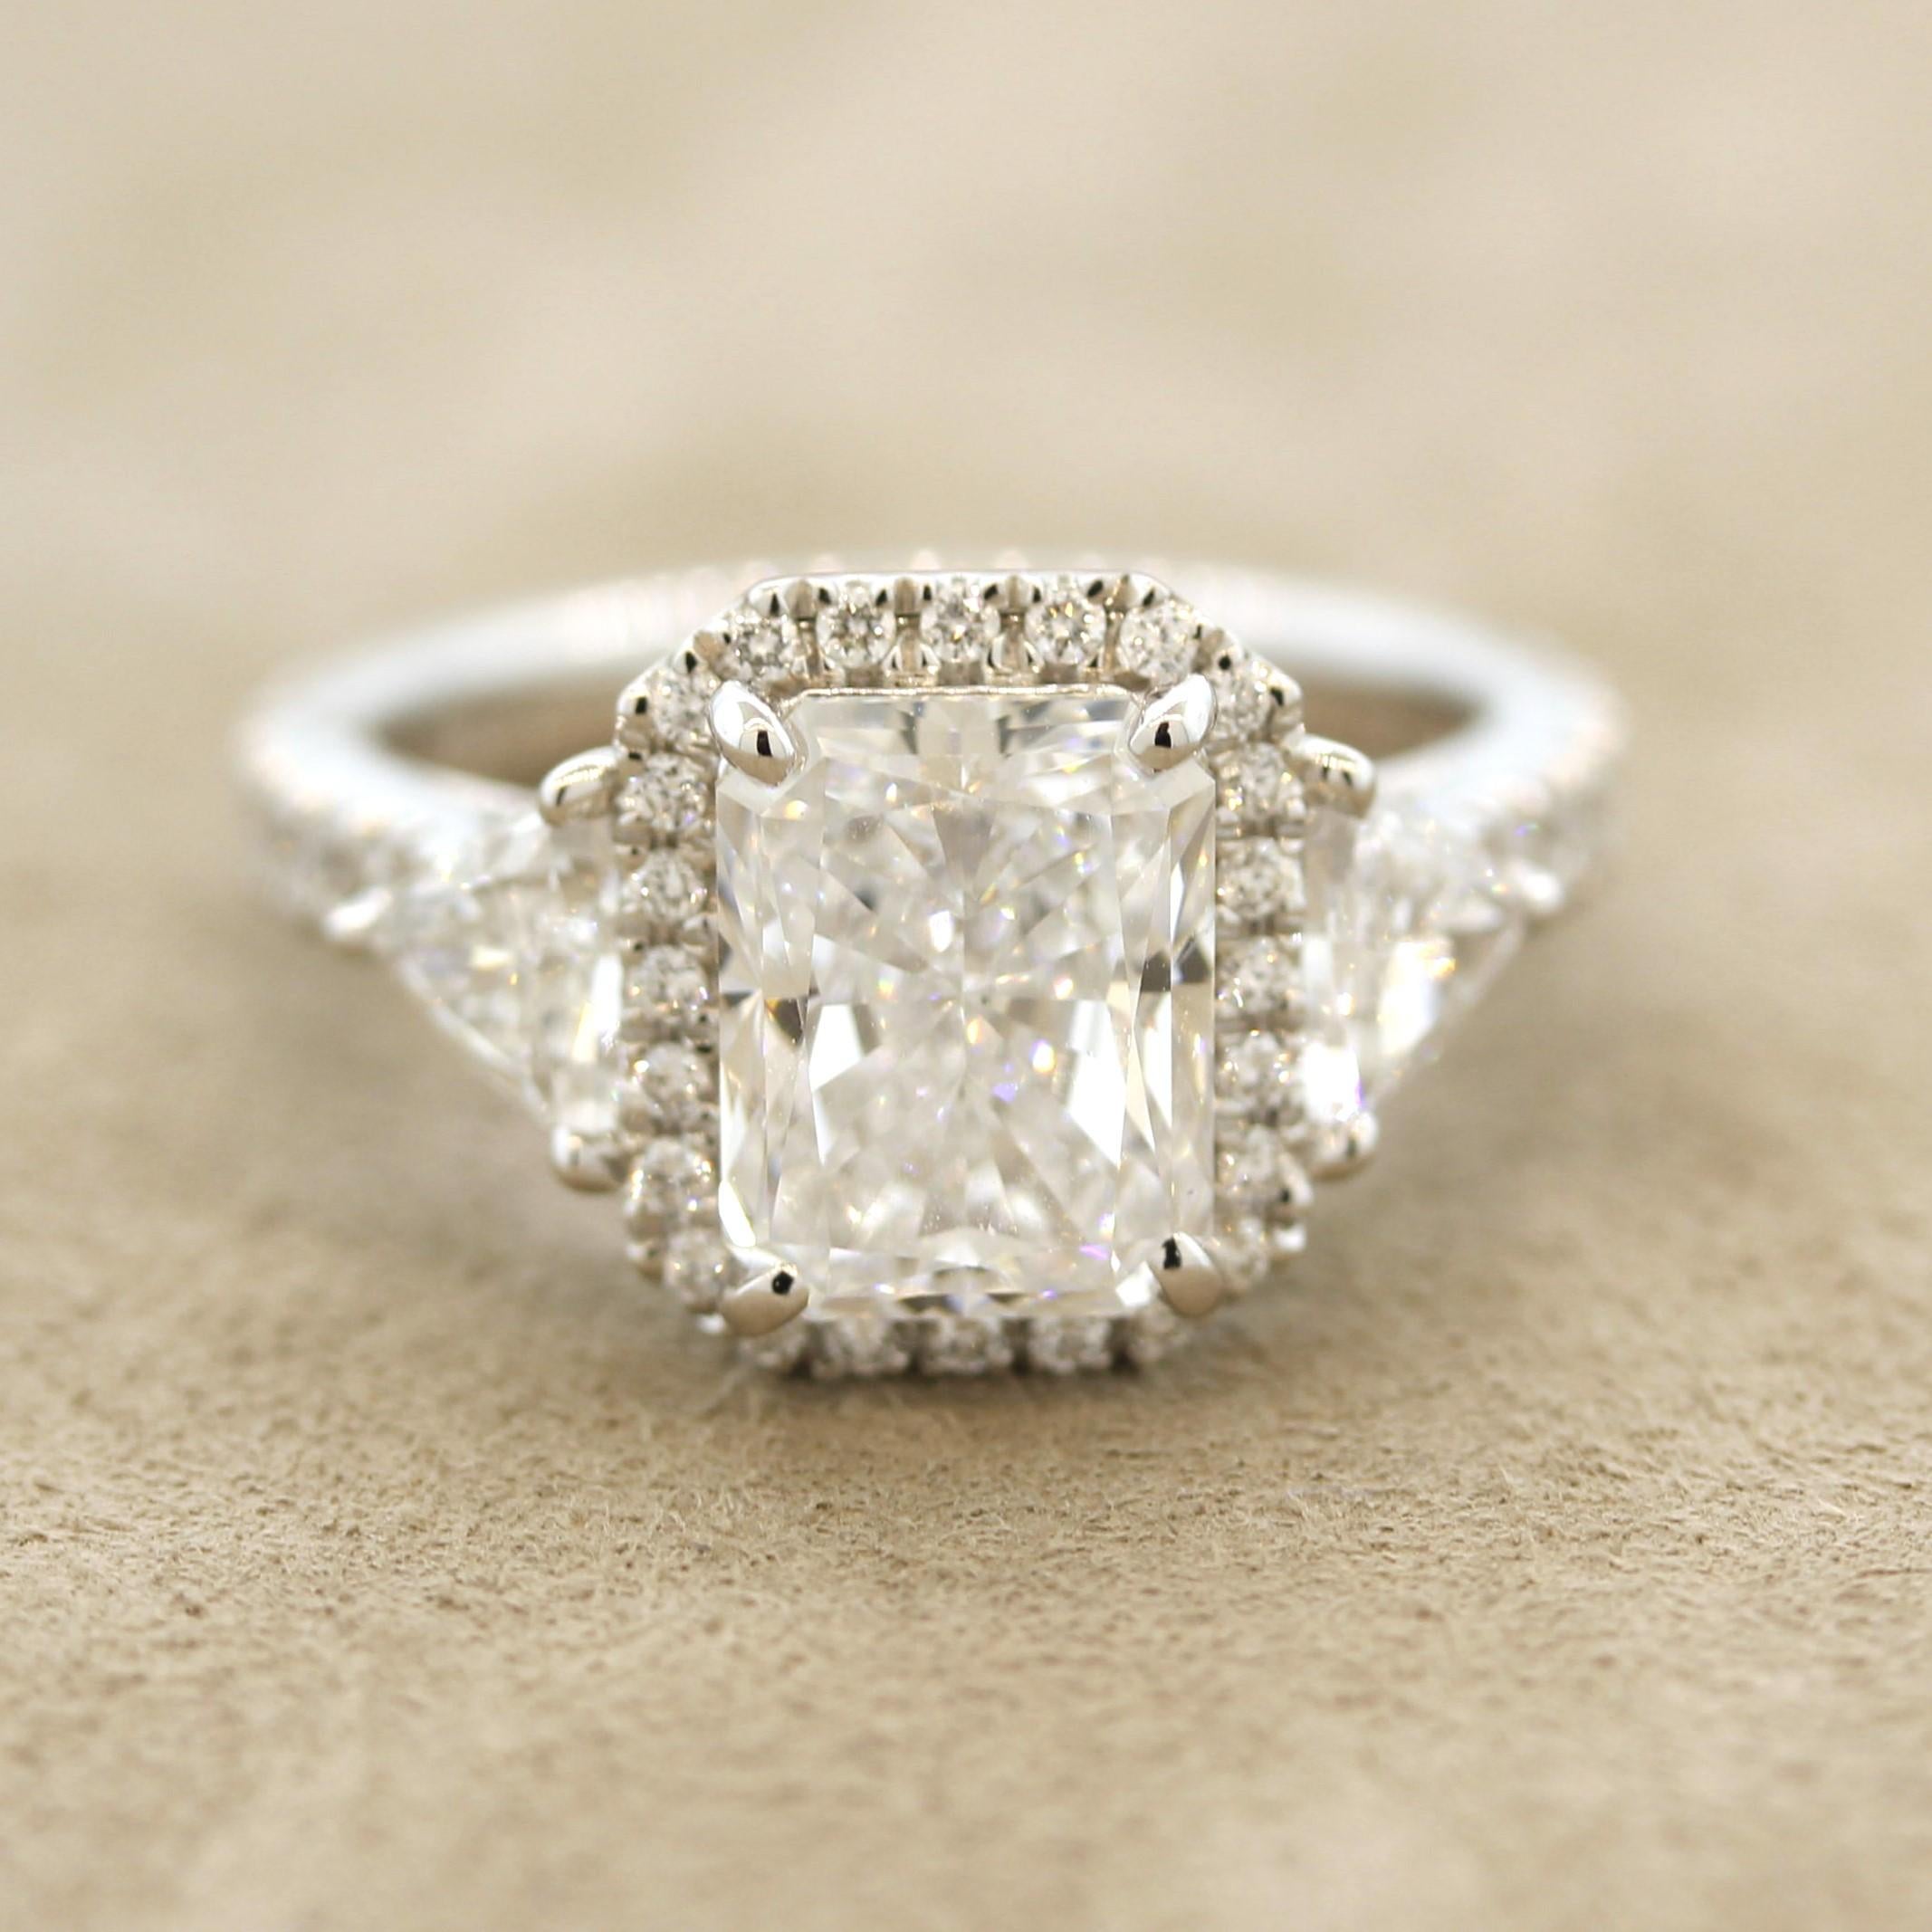 So gut wie es nur geht! Ein Diamant mit 3,04 Karat im Strahlenschliff bildet die Grundlage für diesen schönen Ring aus Platin. Er hat den Farbgrad D und den Reinheitsgrad IF (internly flawless), was diesen Diamanten extrem rein, sauber und weiß